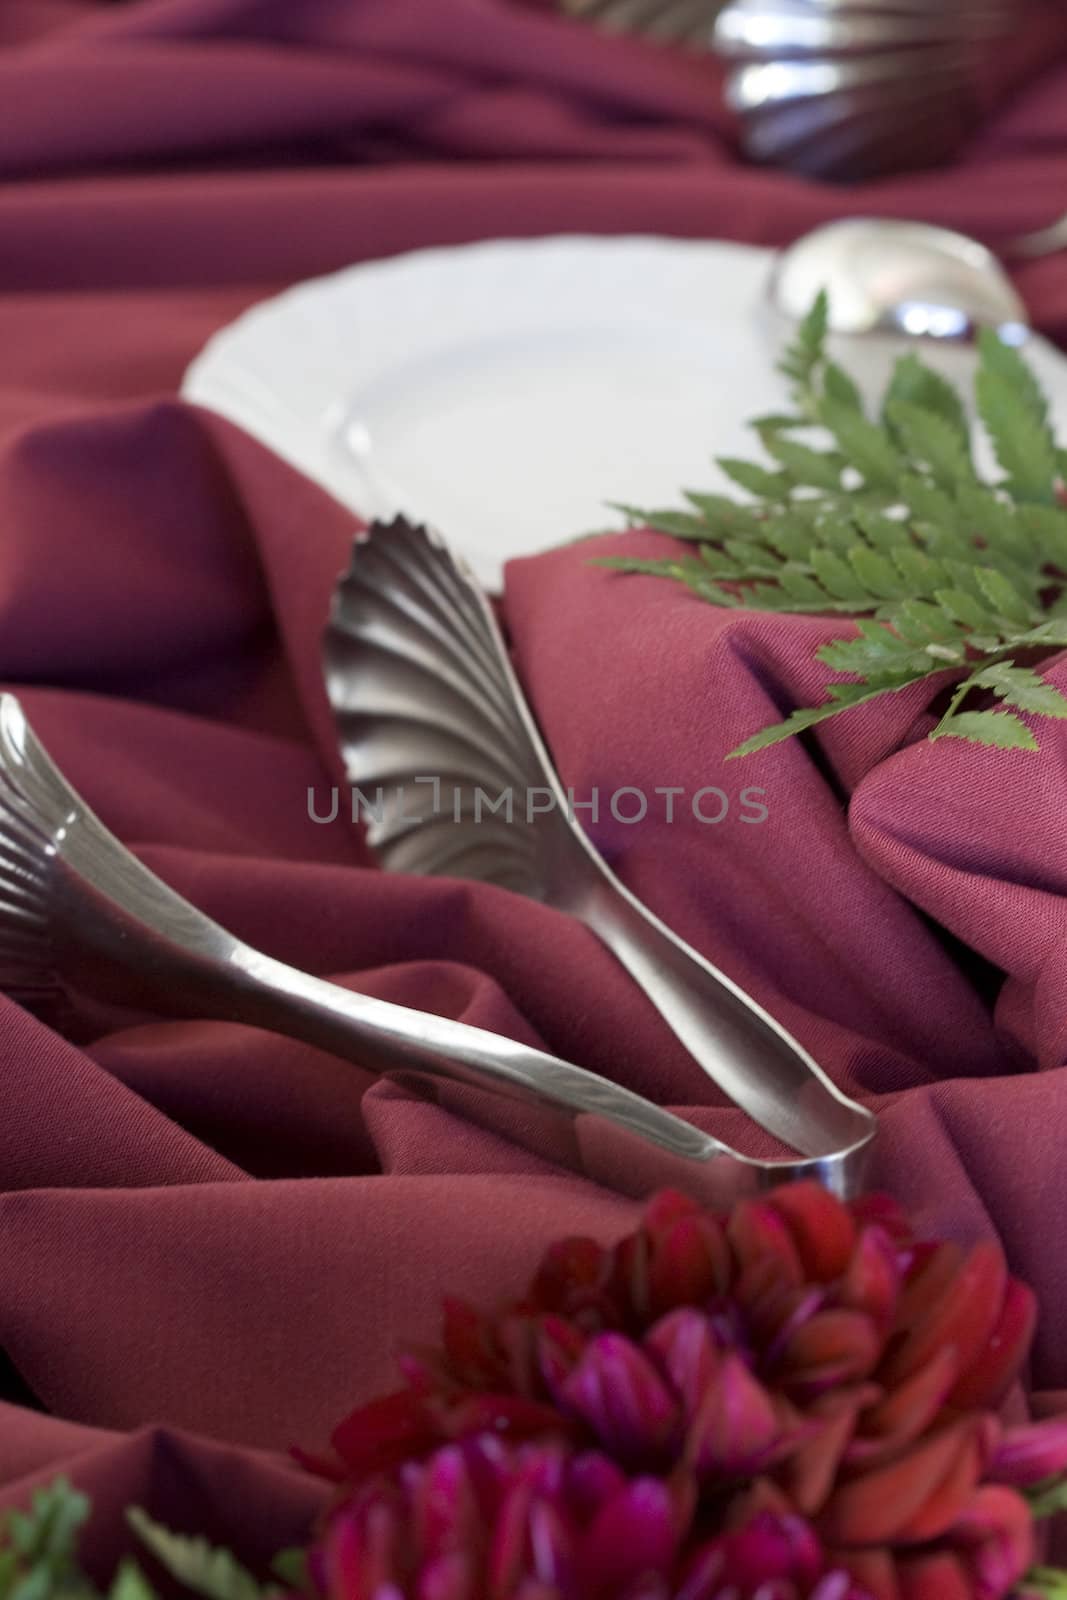 wedding utensils by LWPhotog